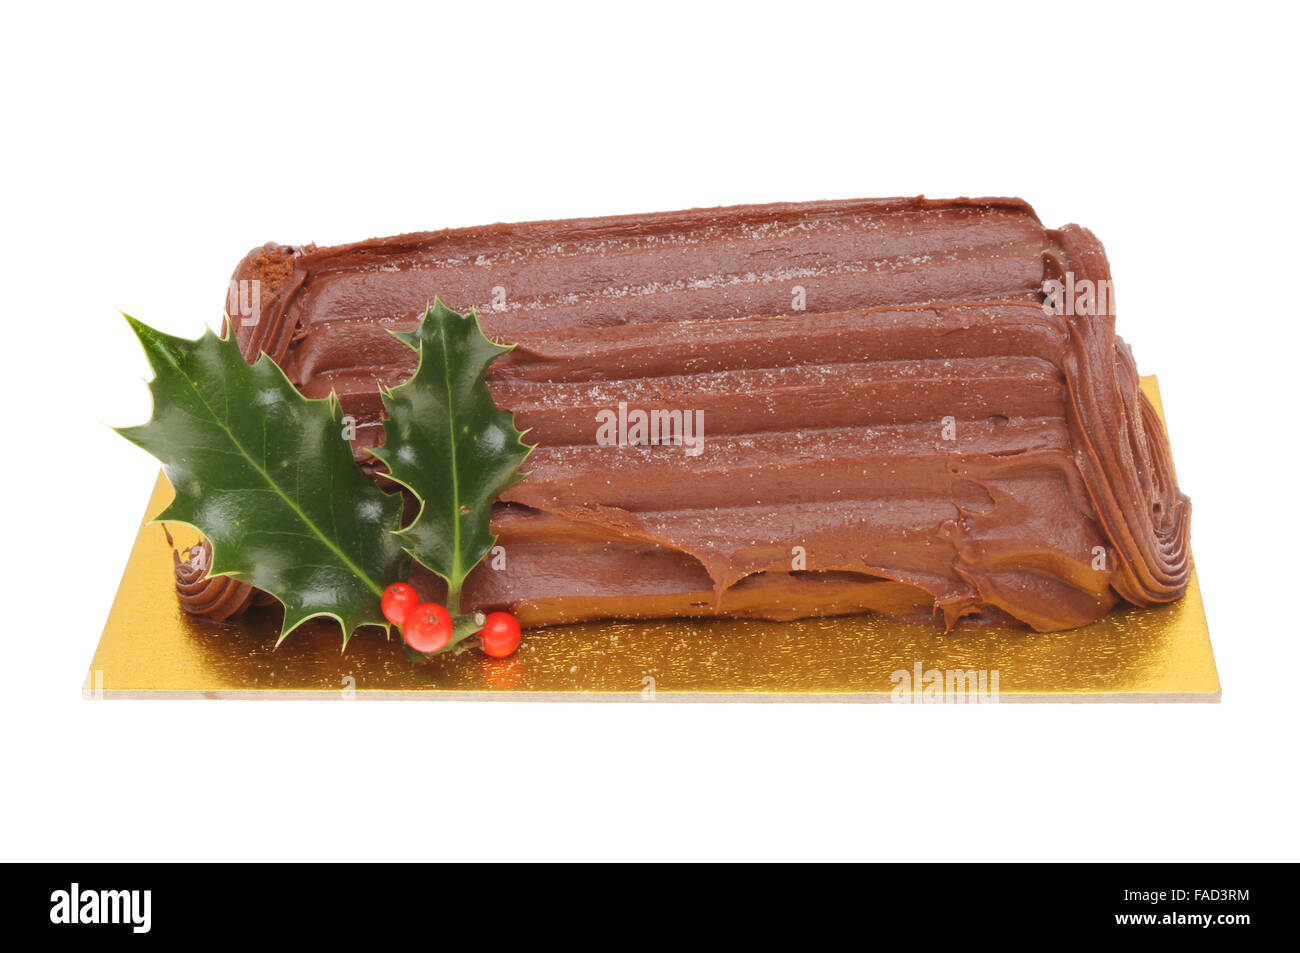 Il cioccolato yule log decorate con un rametto di agrifoglio isolata contro bianco Foto Stock